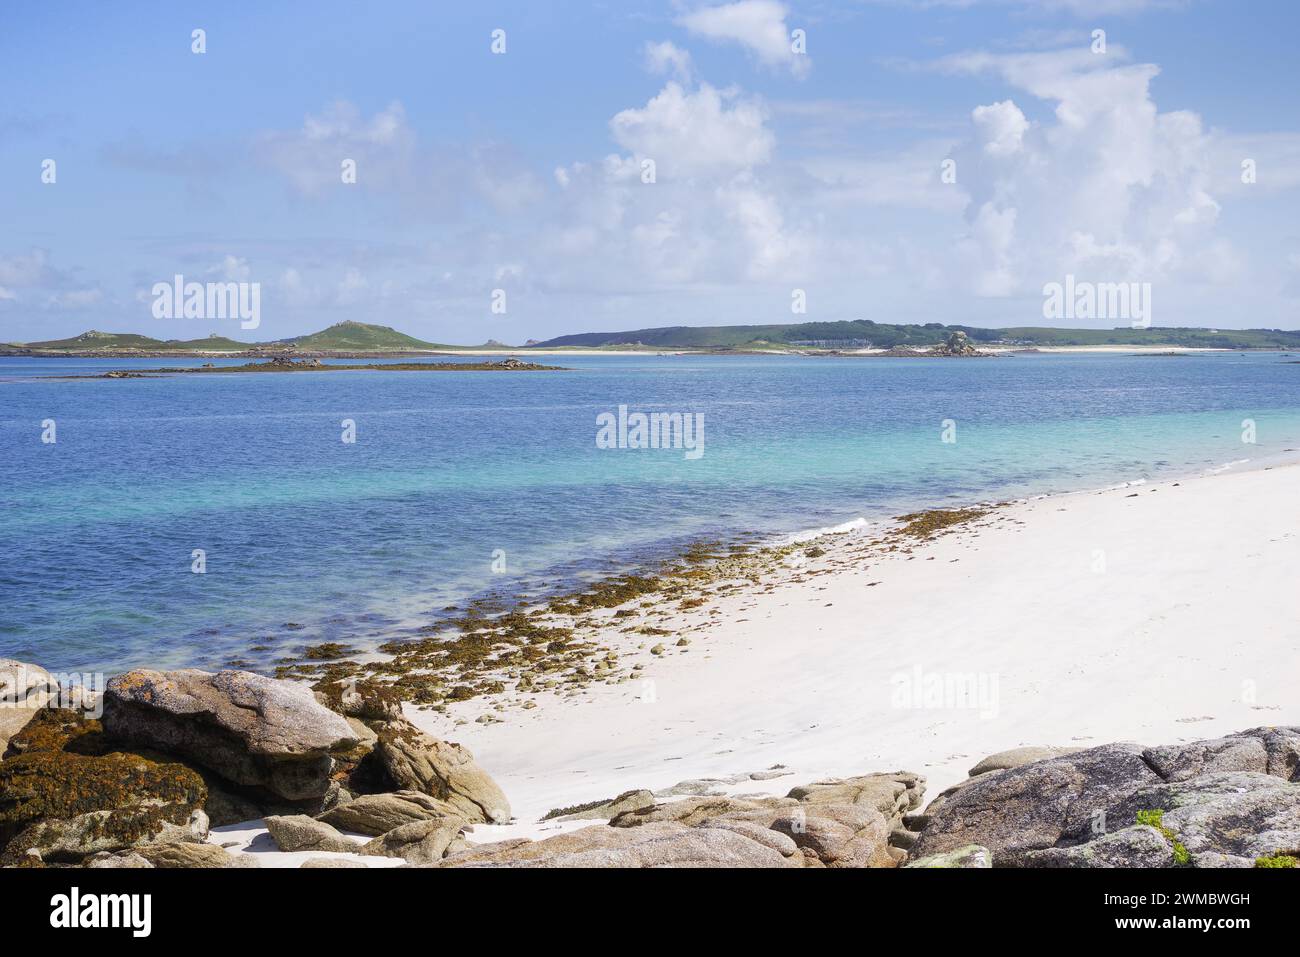 Wite plages de sable et mers Azur sur l'île de Tresco - îles de Scilly, Royaume-Uni Banque D'Images